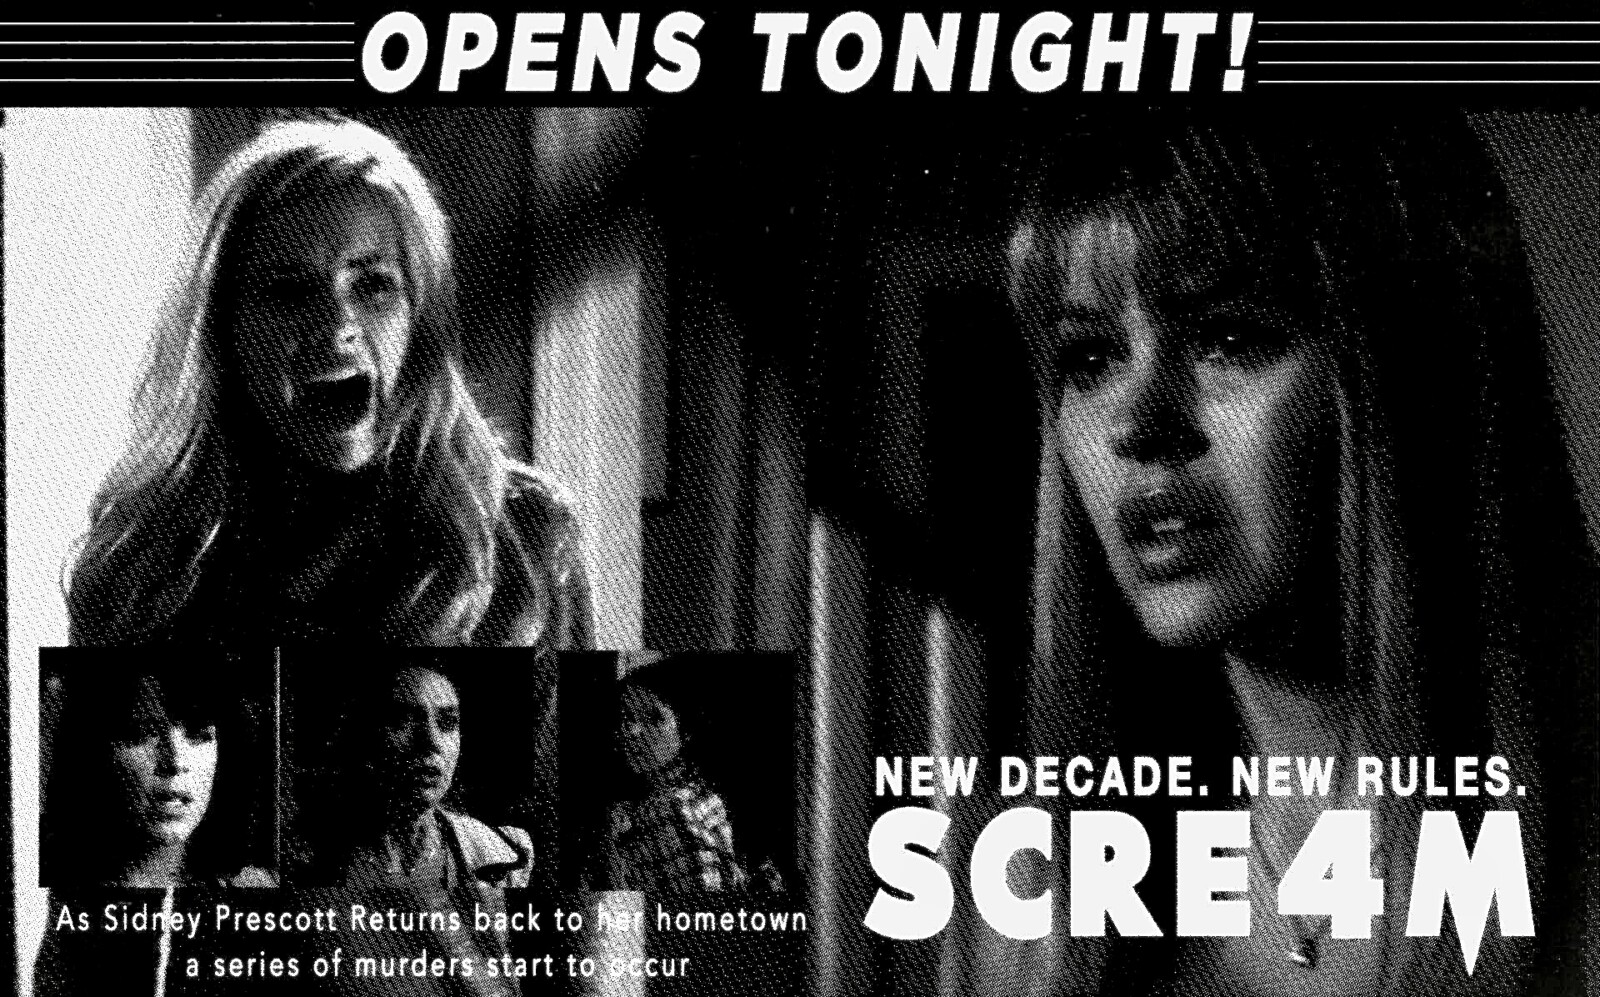 Scream 4 (2011) retro style newspaper Ad